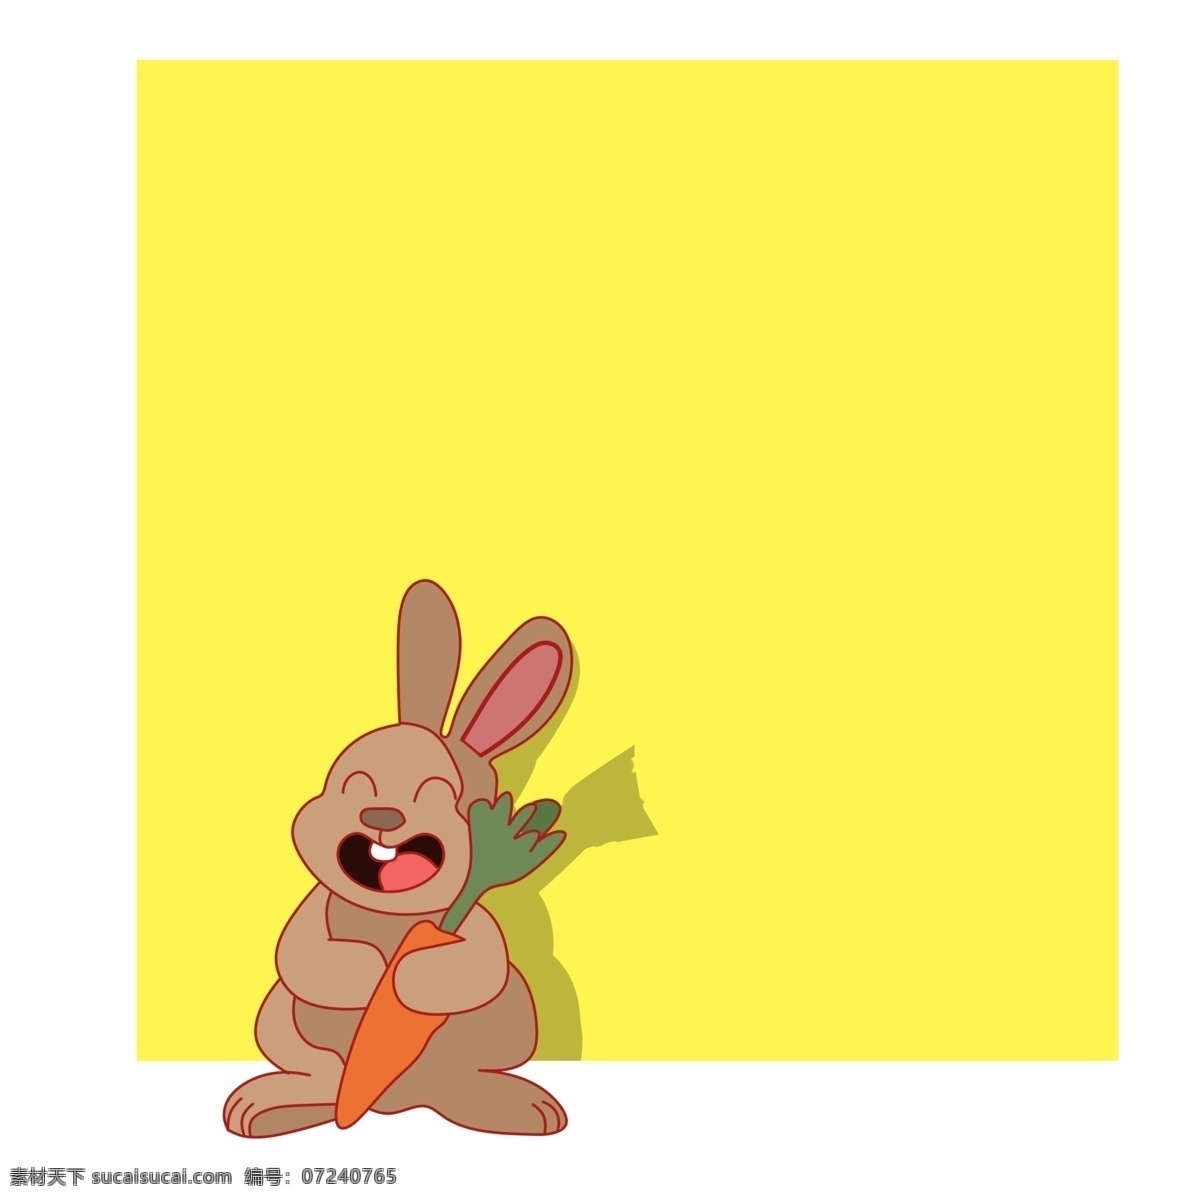 手绘 可爱 兔子 边框 可爱兔子 胡萝卜 黄色边框 正方形边框 动物边框 卡通 扁平风 重点